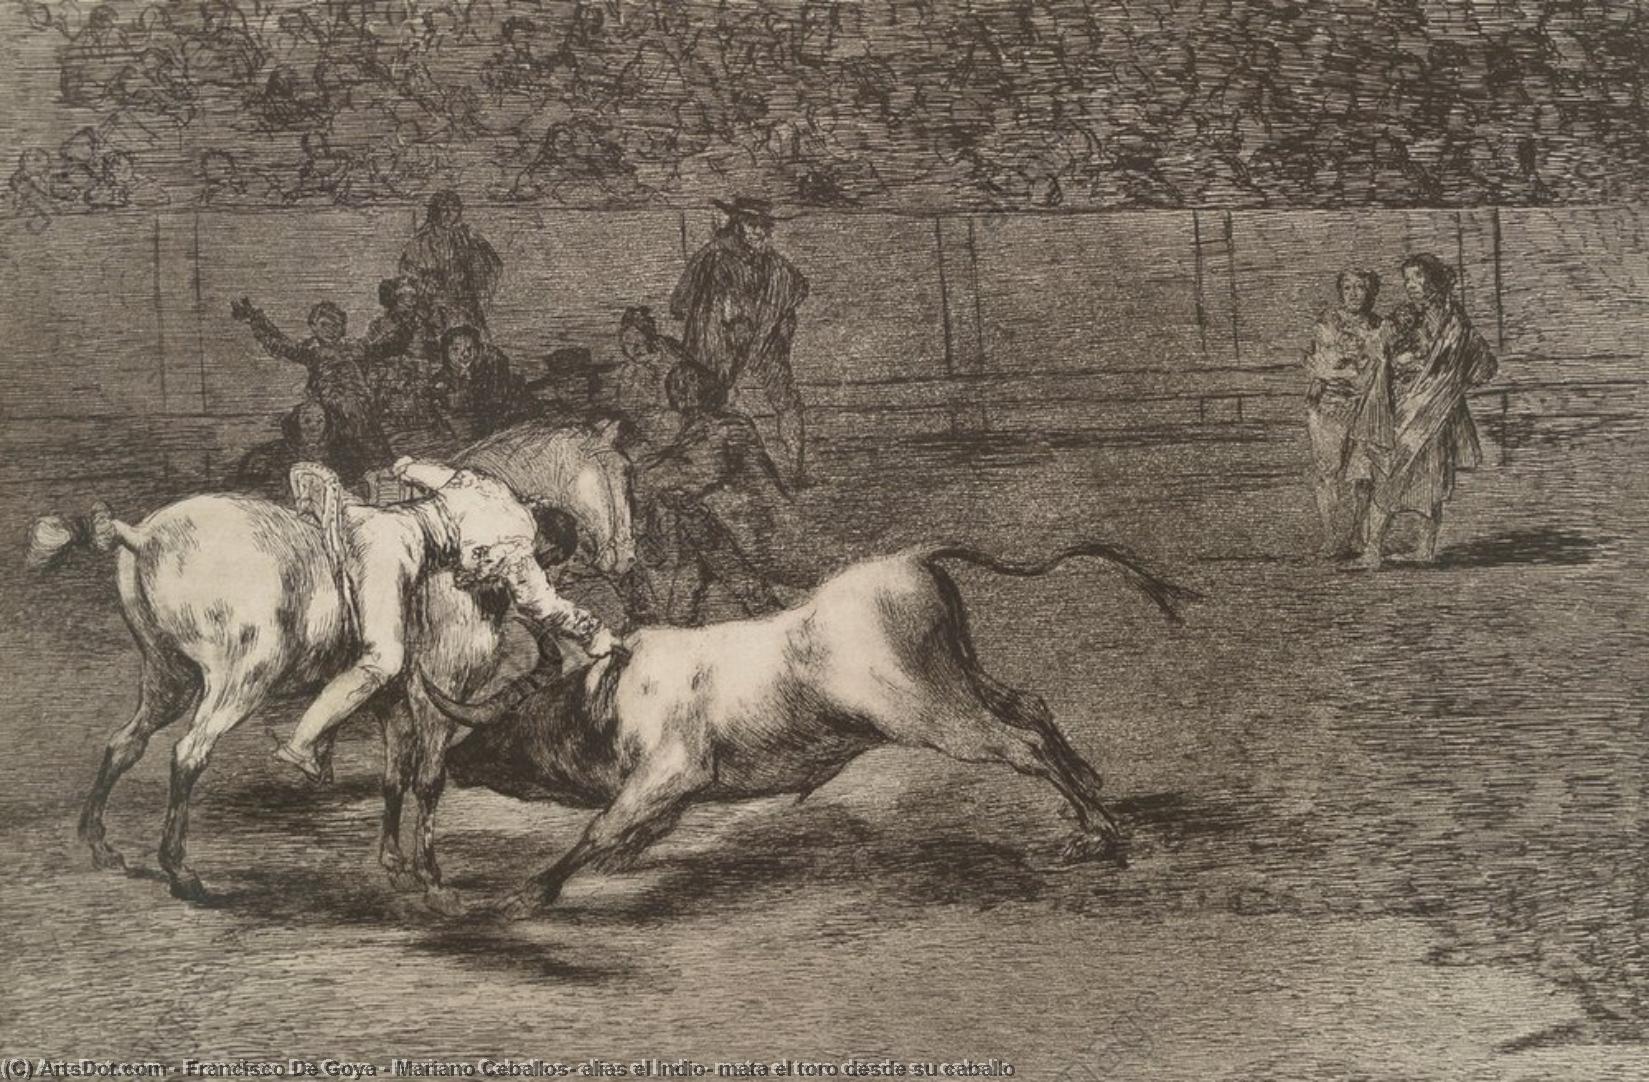 WikiOO.org - Encyclopedia of Fine Arts - Schilderen, Artwork Francisco De Goya - Mariano Ceballos, alias el Indio, mata el toro desde su caballo